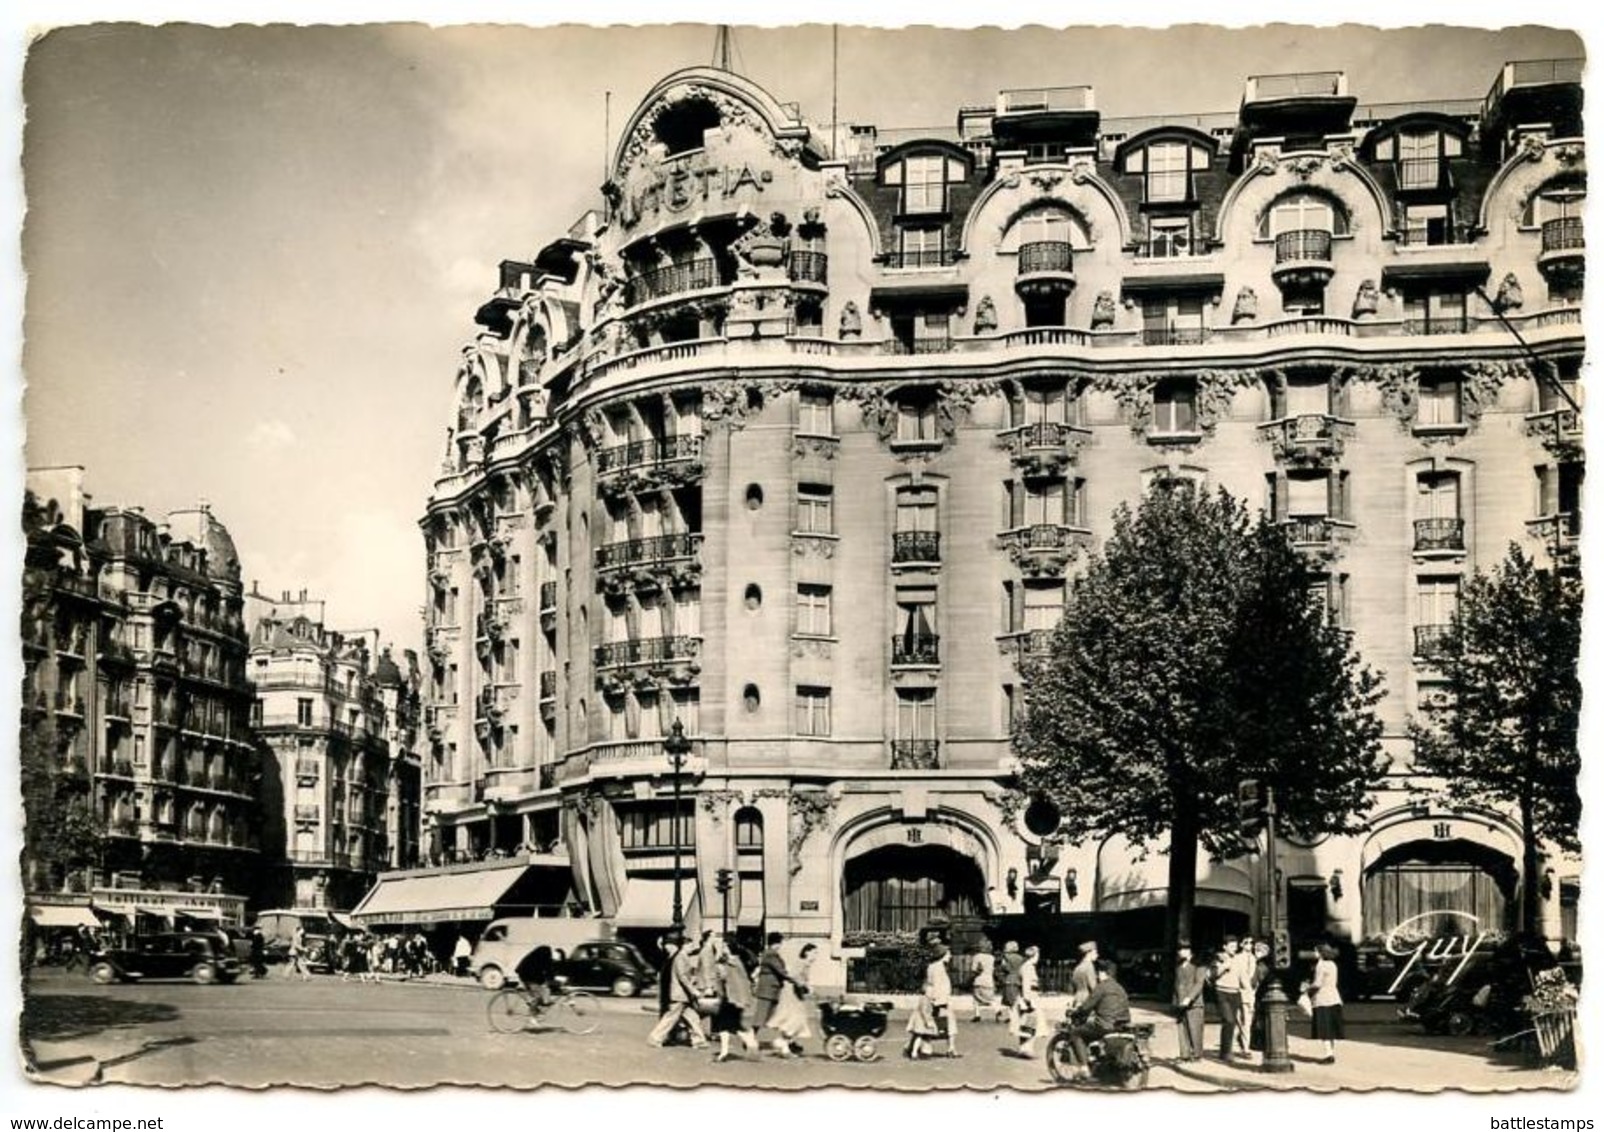 France Vintage RPPC Postcard Paris - Hotel Lutétia, Raspail Boulevard - Pubs, Hotels, Restaurants